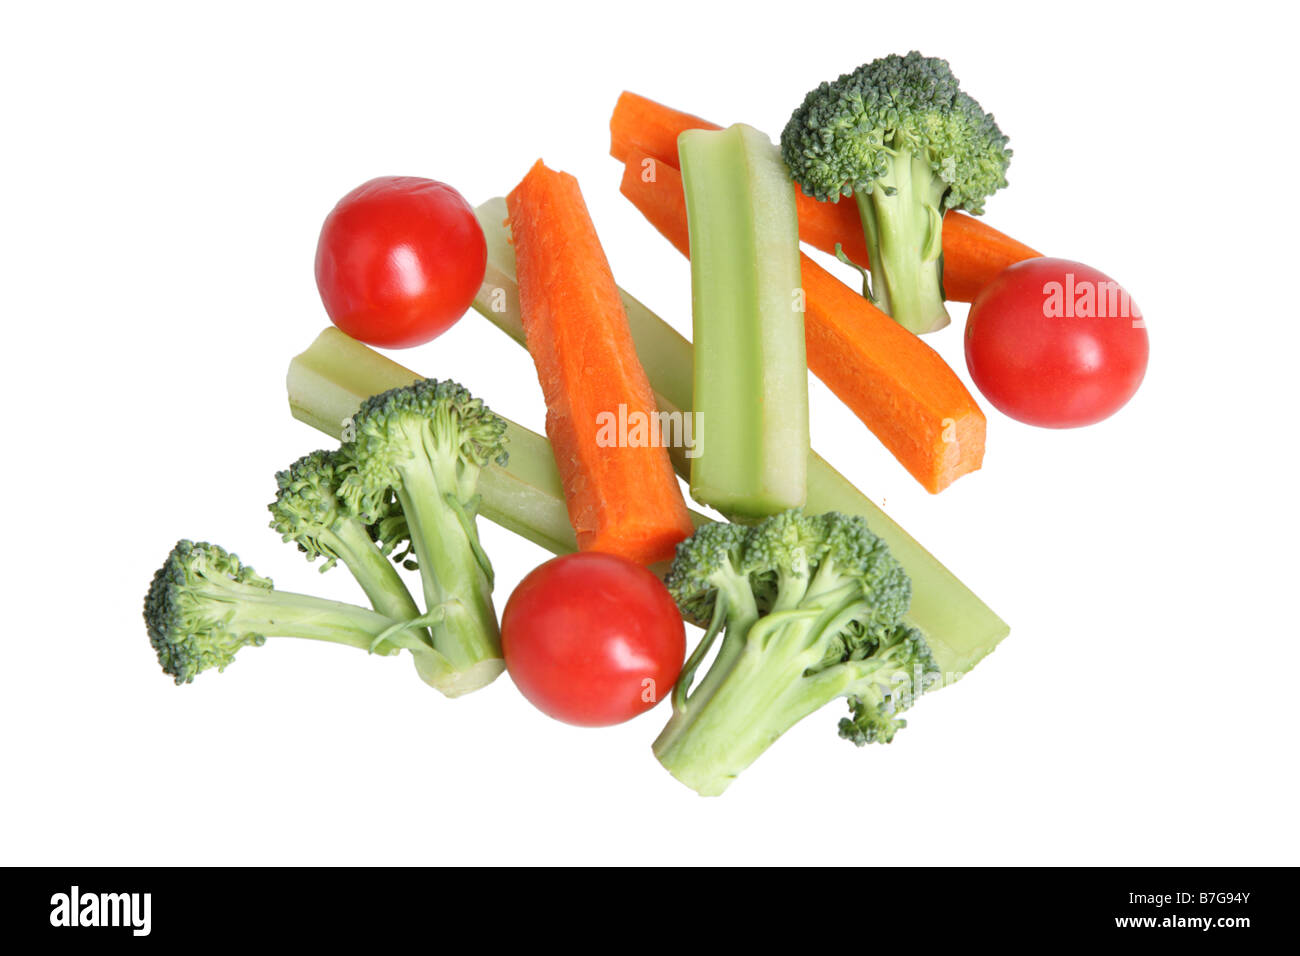 Le Brocoli Céleri Tomates et bâtonnets de carottes découper sur fond blanc Banque D'Images